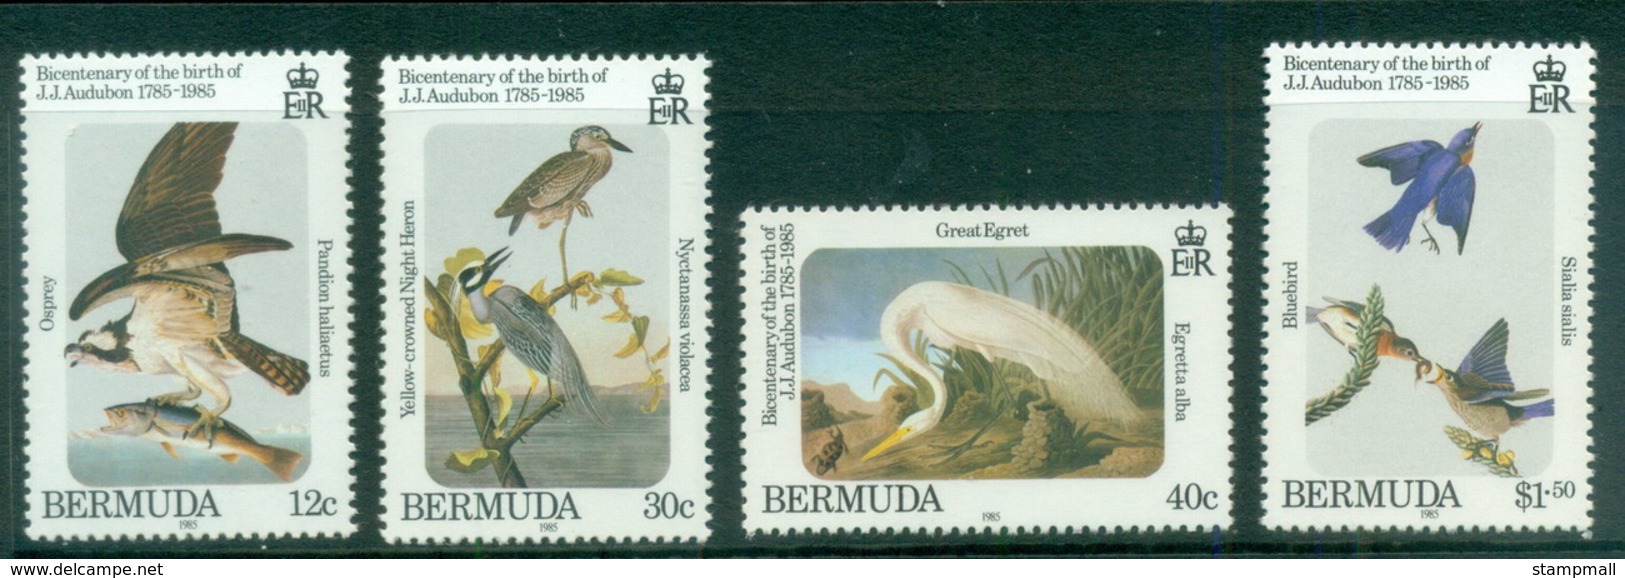 Bermuda 1985 Audubon Birds MUH - Bermuda